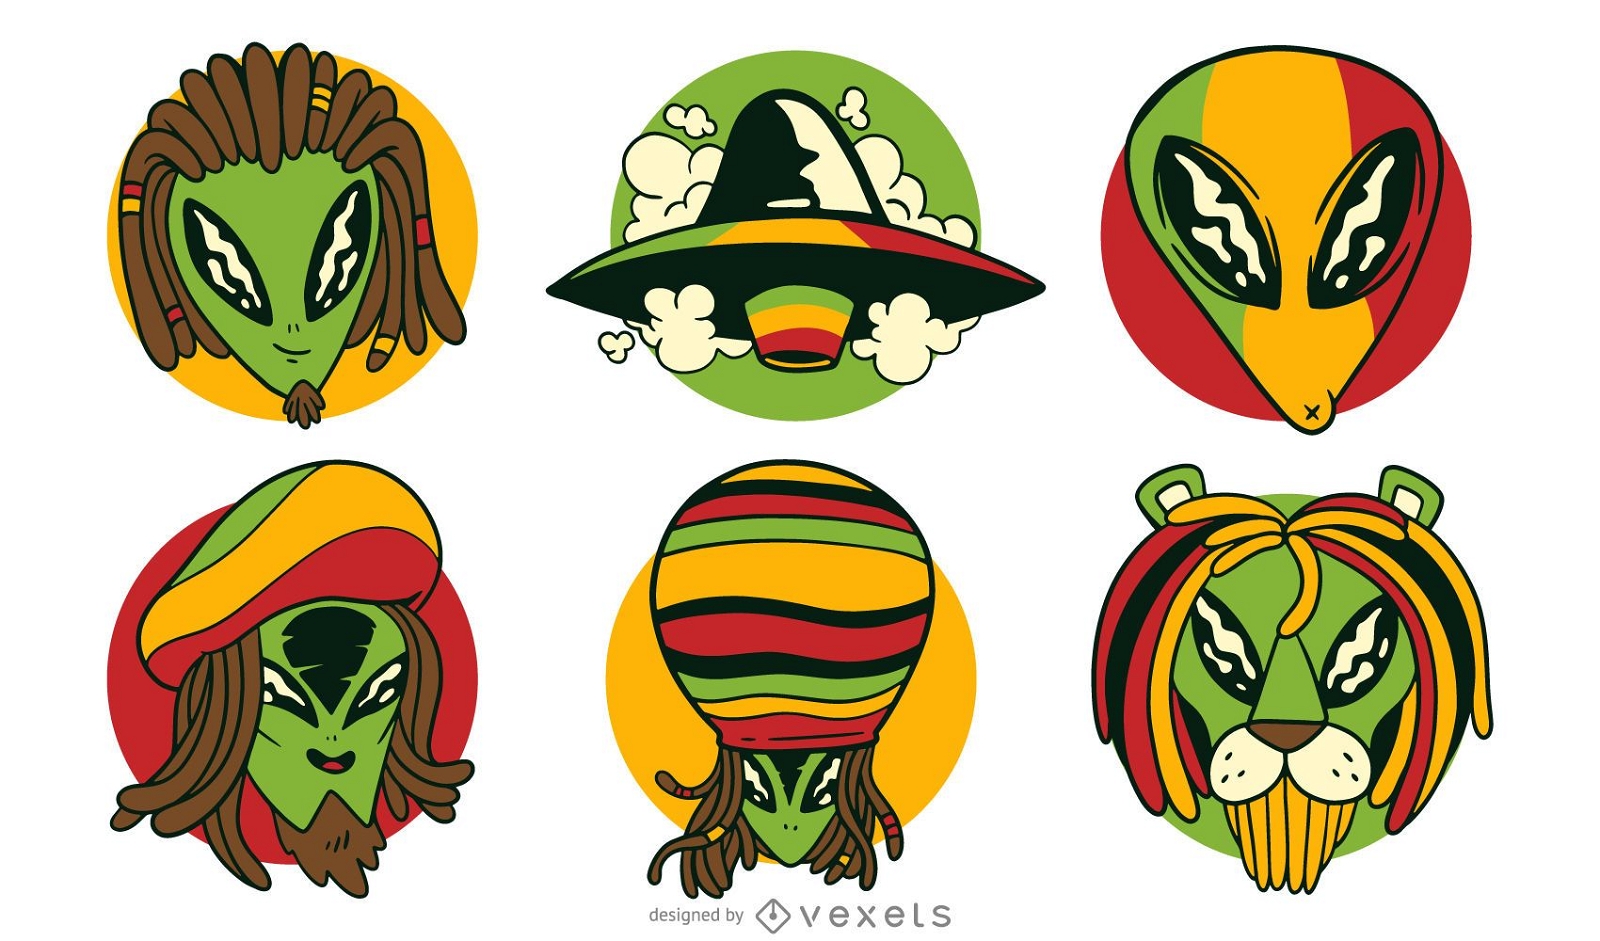 Ilustração de cabeça alienígena de reggae, Vetor Premium